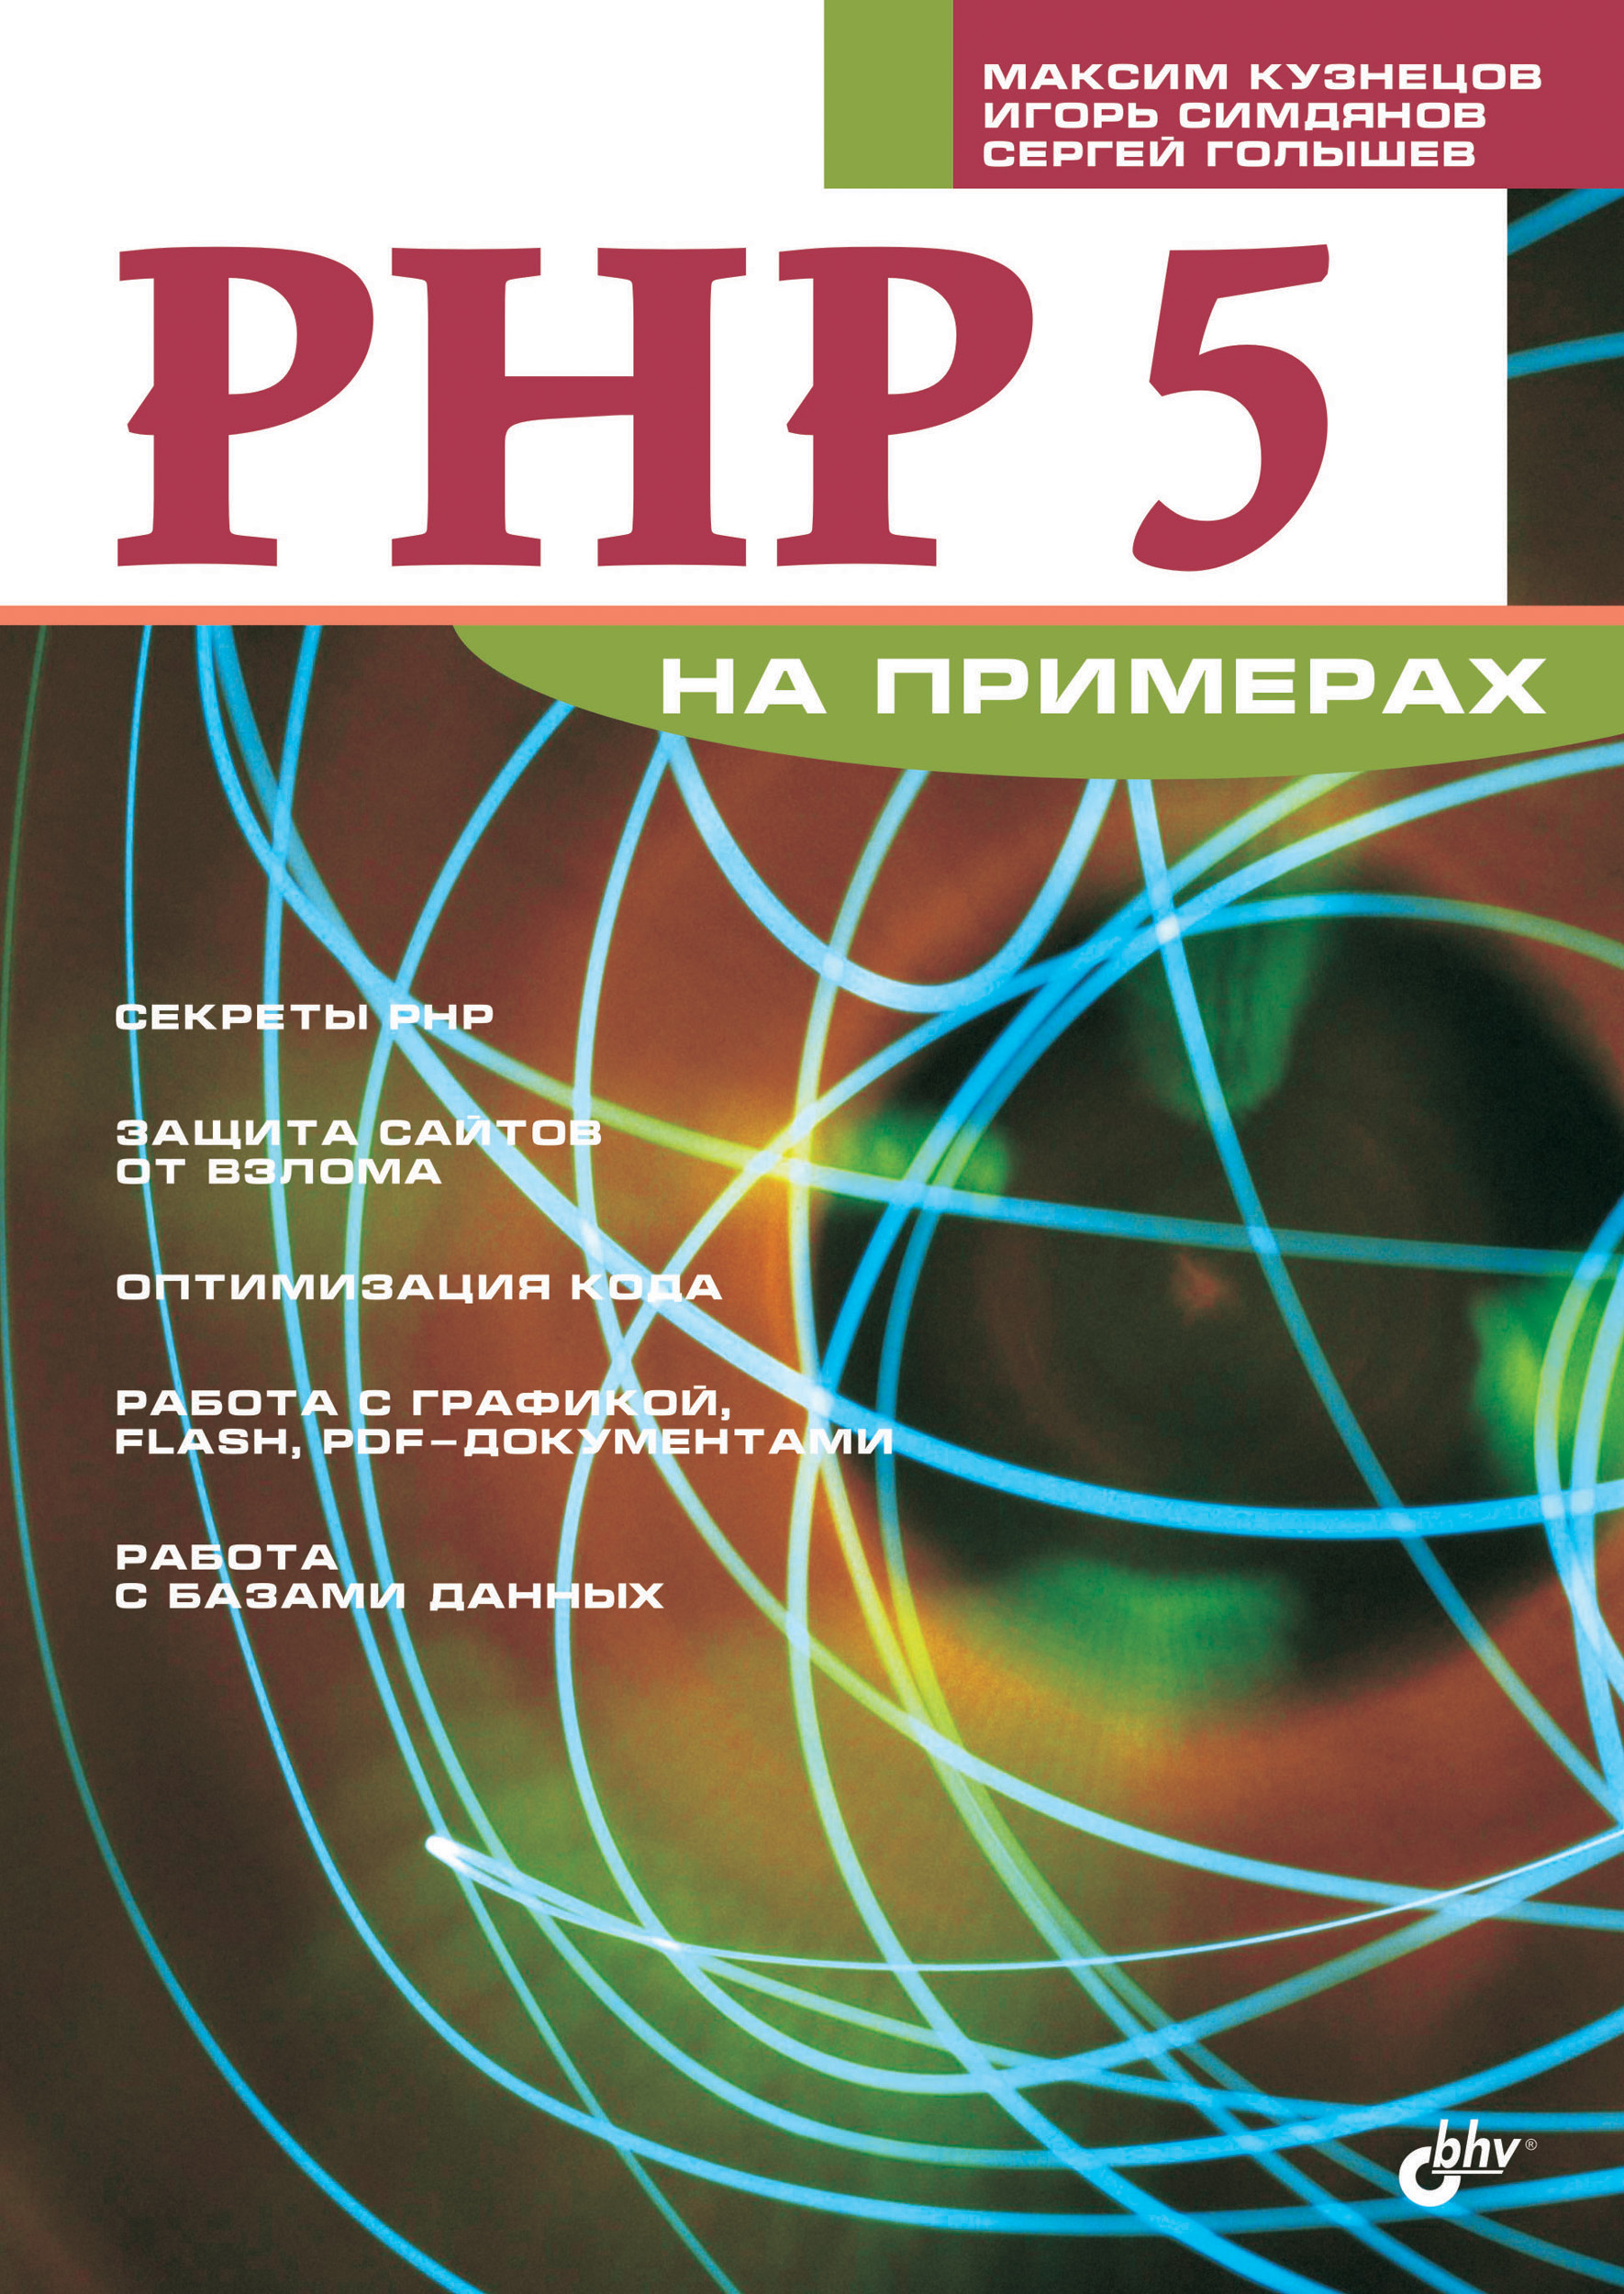 Книга На примерах PHP 5 на примерах созданная Максим Кузнецов, Игорь Симдянов, Сергей Голышев может относится к жанру интернет, программирование. Стоимость электронной книги PHP 5 на примерах с идентификатором 6654087 составляет 111.00 руб.